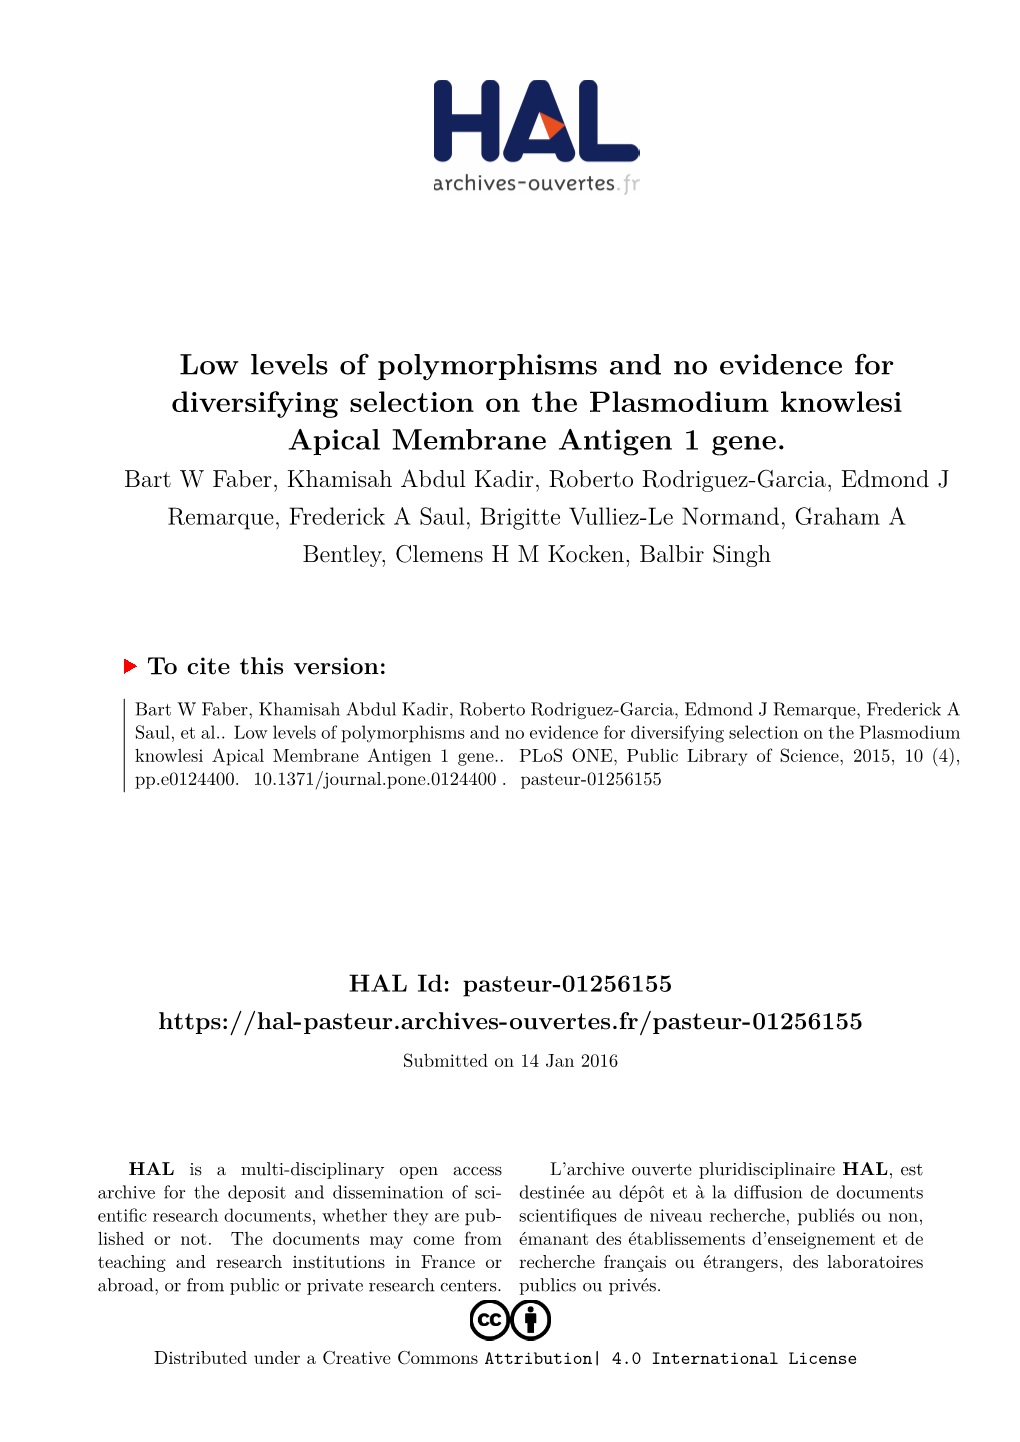 Plasmodium Knowlesi Apical Membrane Antigen 1 Gene